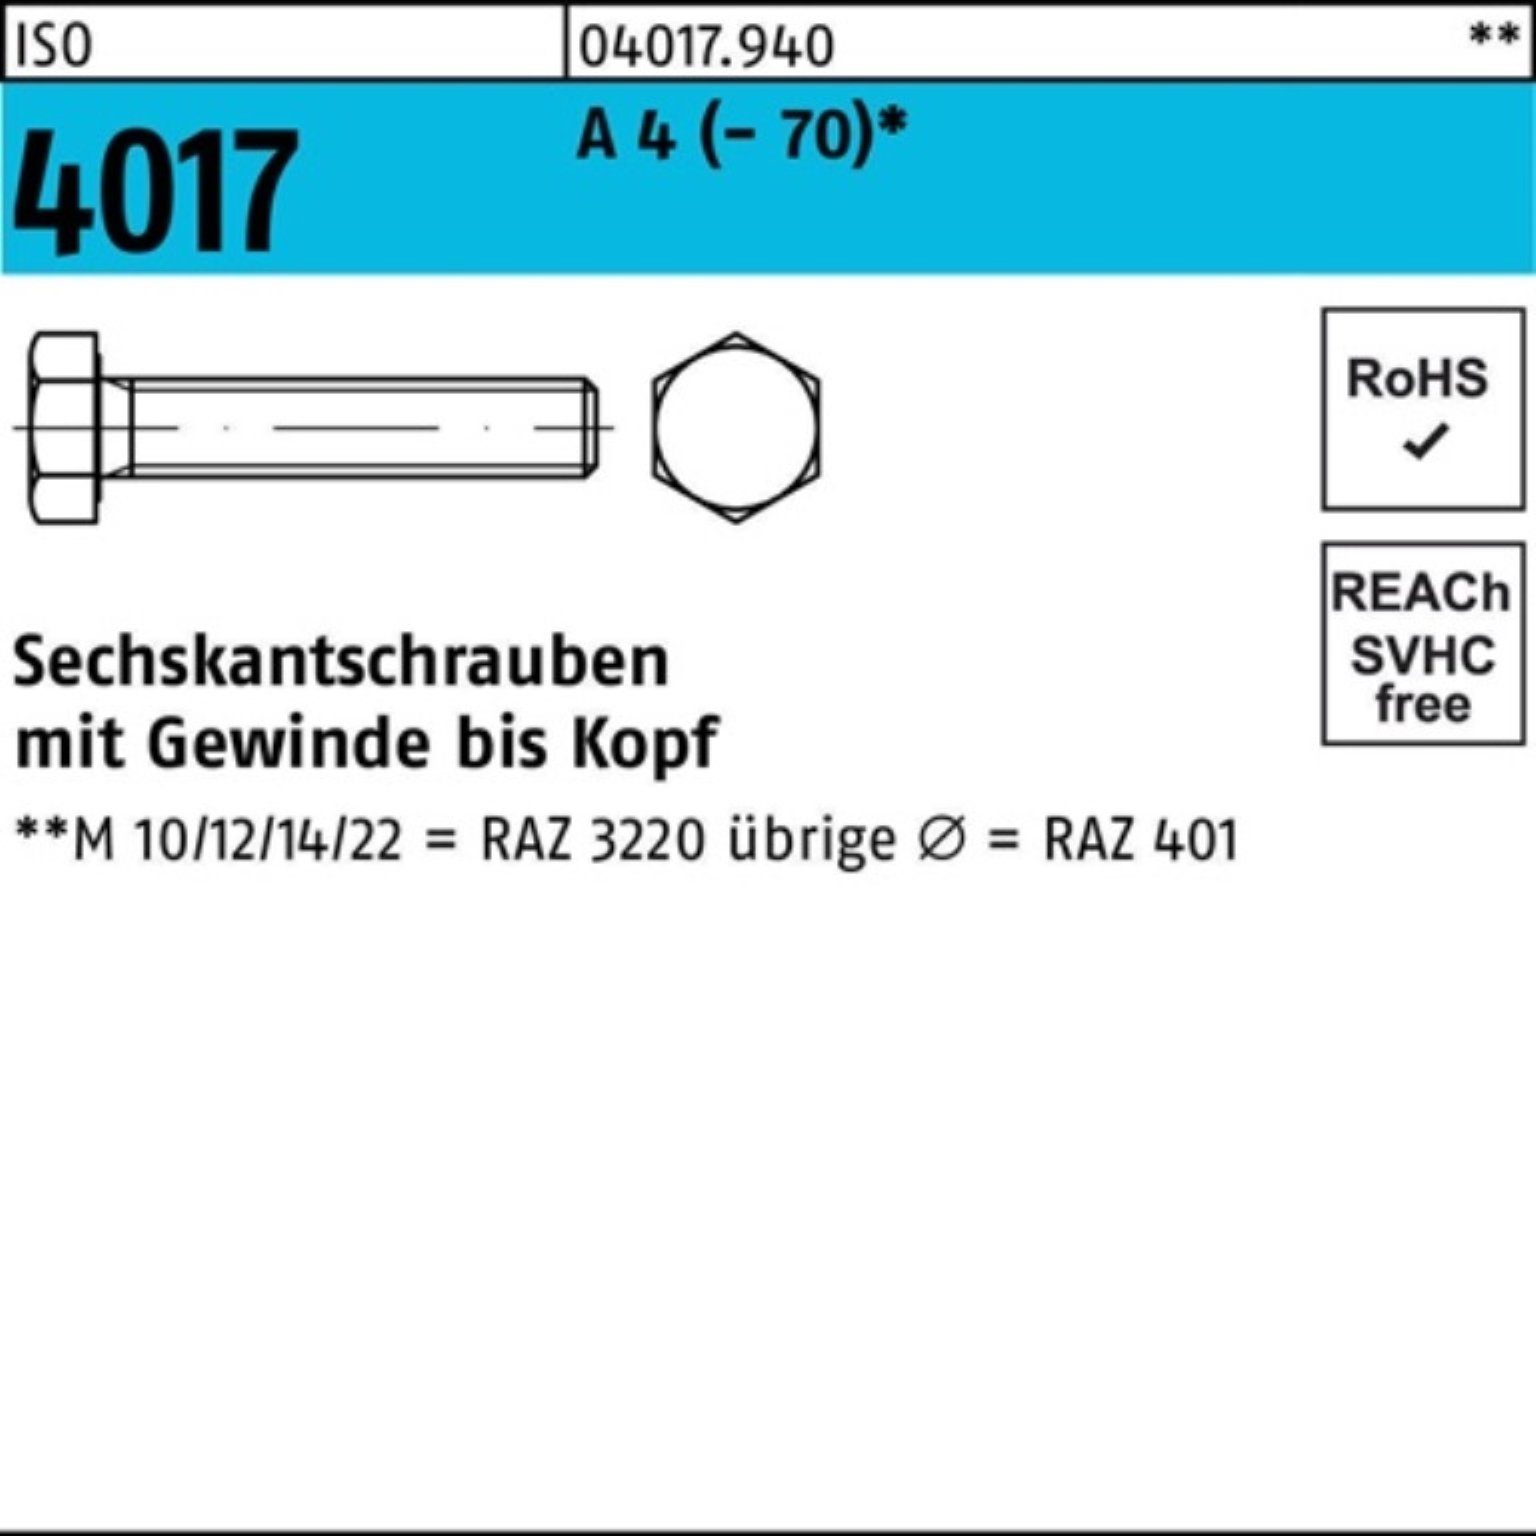 Bufab Sechskantschraube 200er Pack Sechskantschraube ISO 4017 VG M6x 30 A 4 (70) 200 Stück